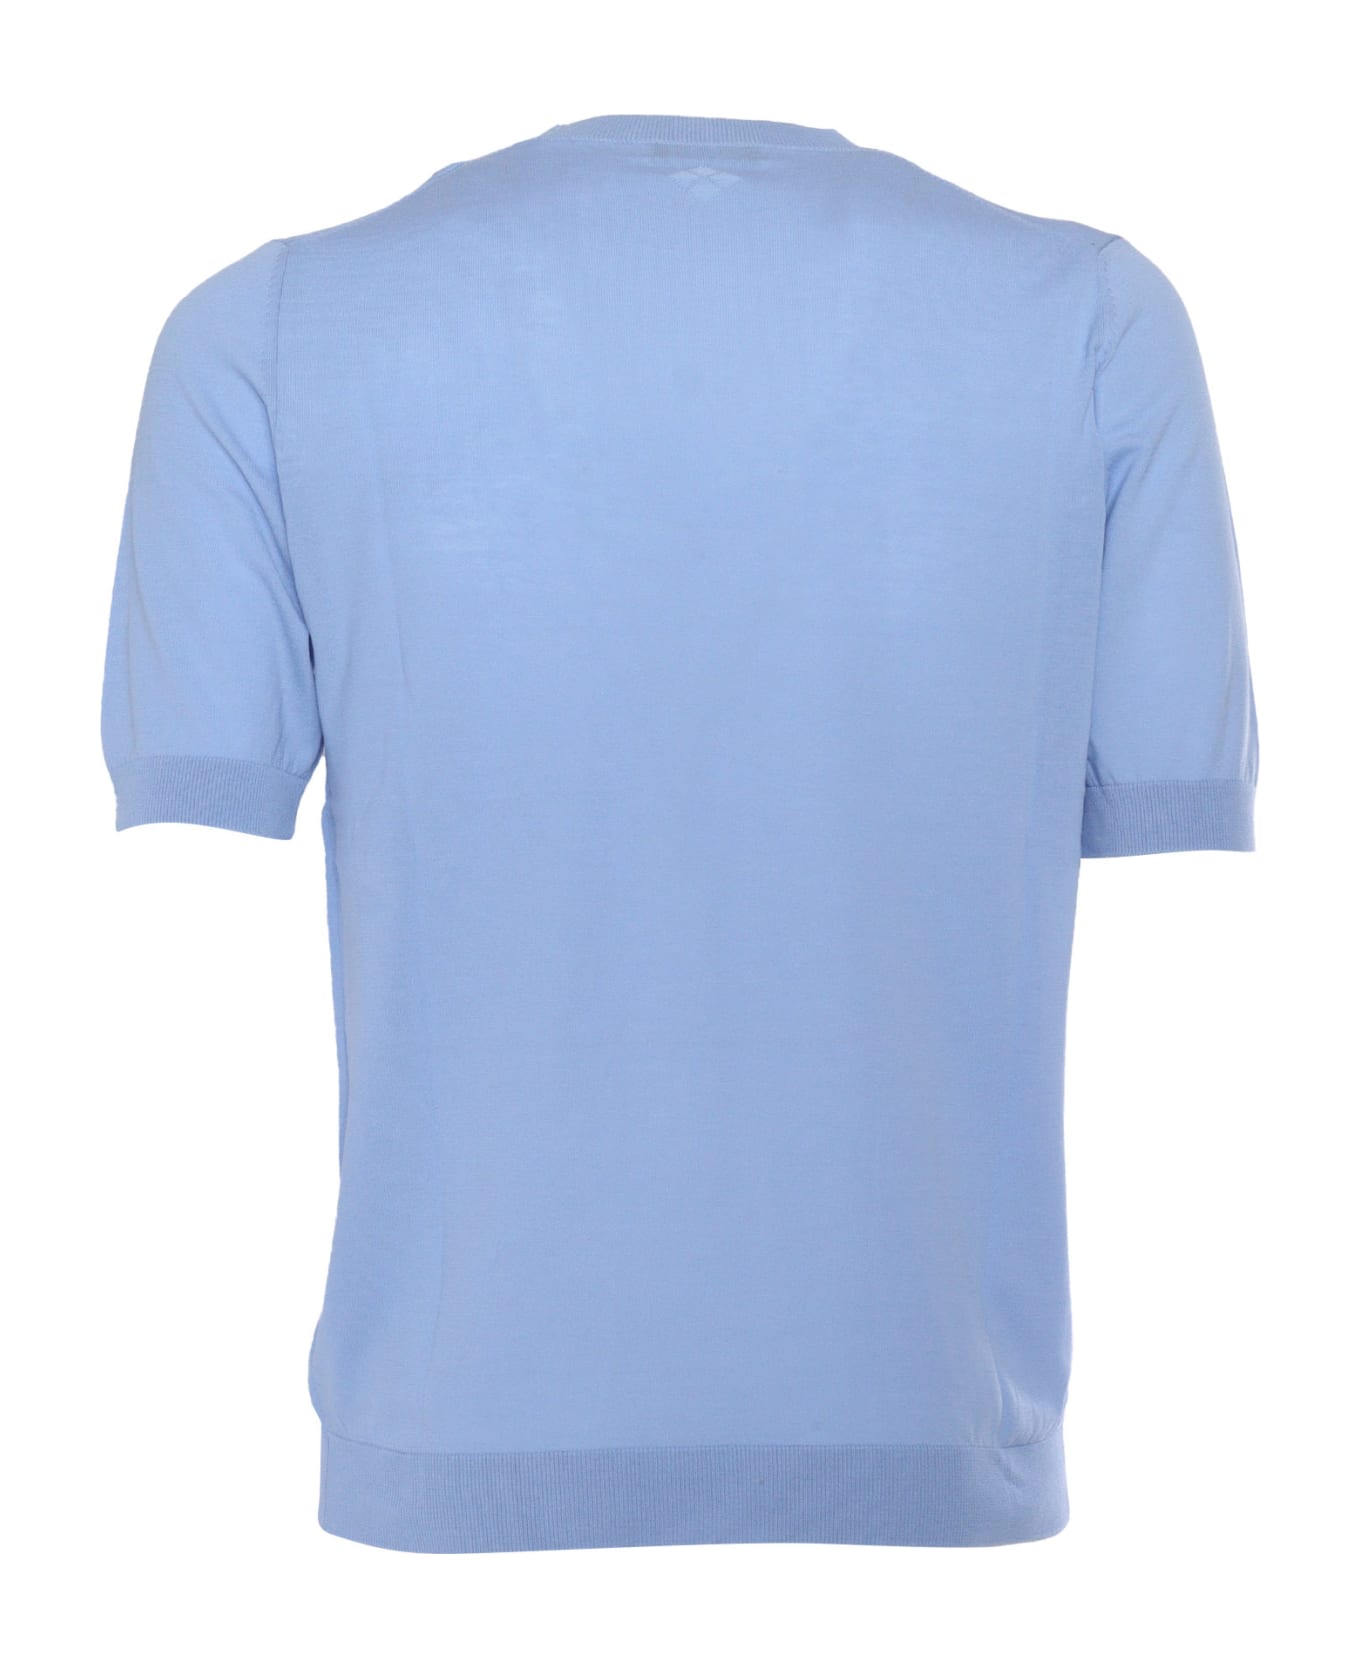 Ballantyne Light Blue Short-sleeved Shirt - BLUE シャツ